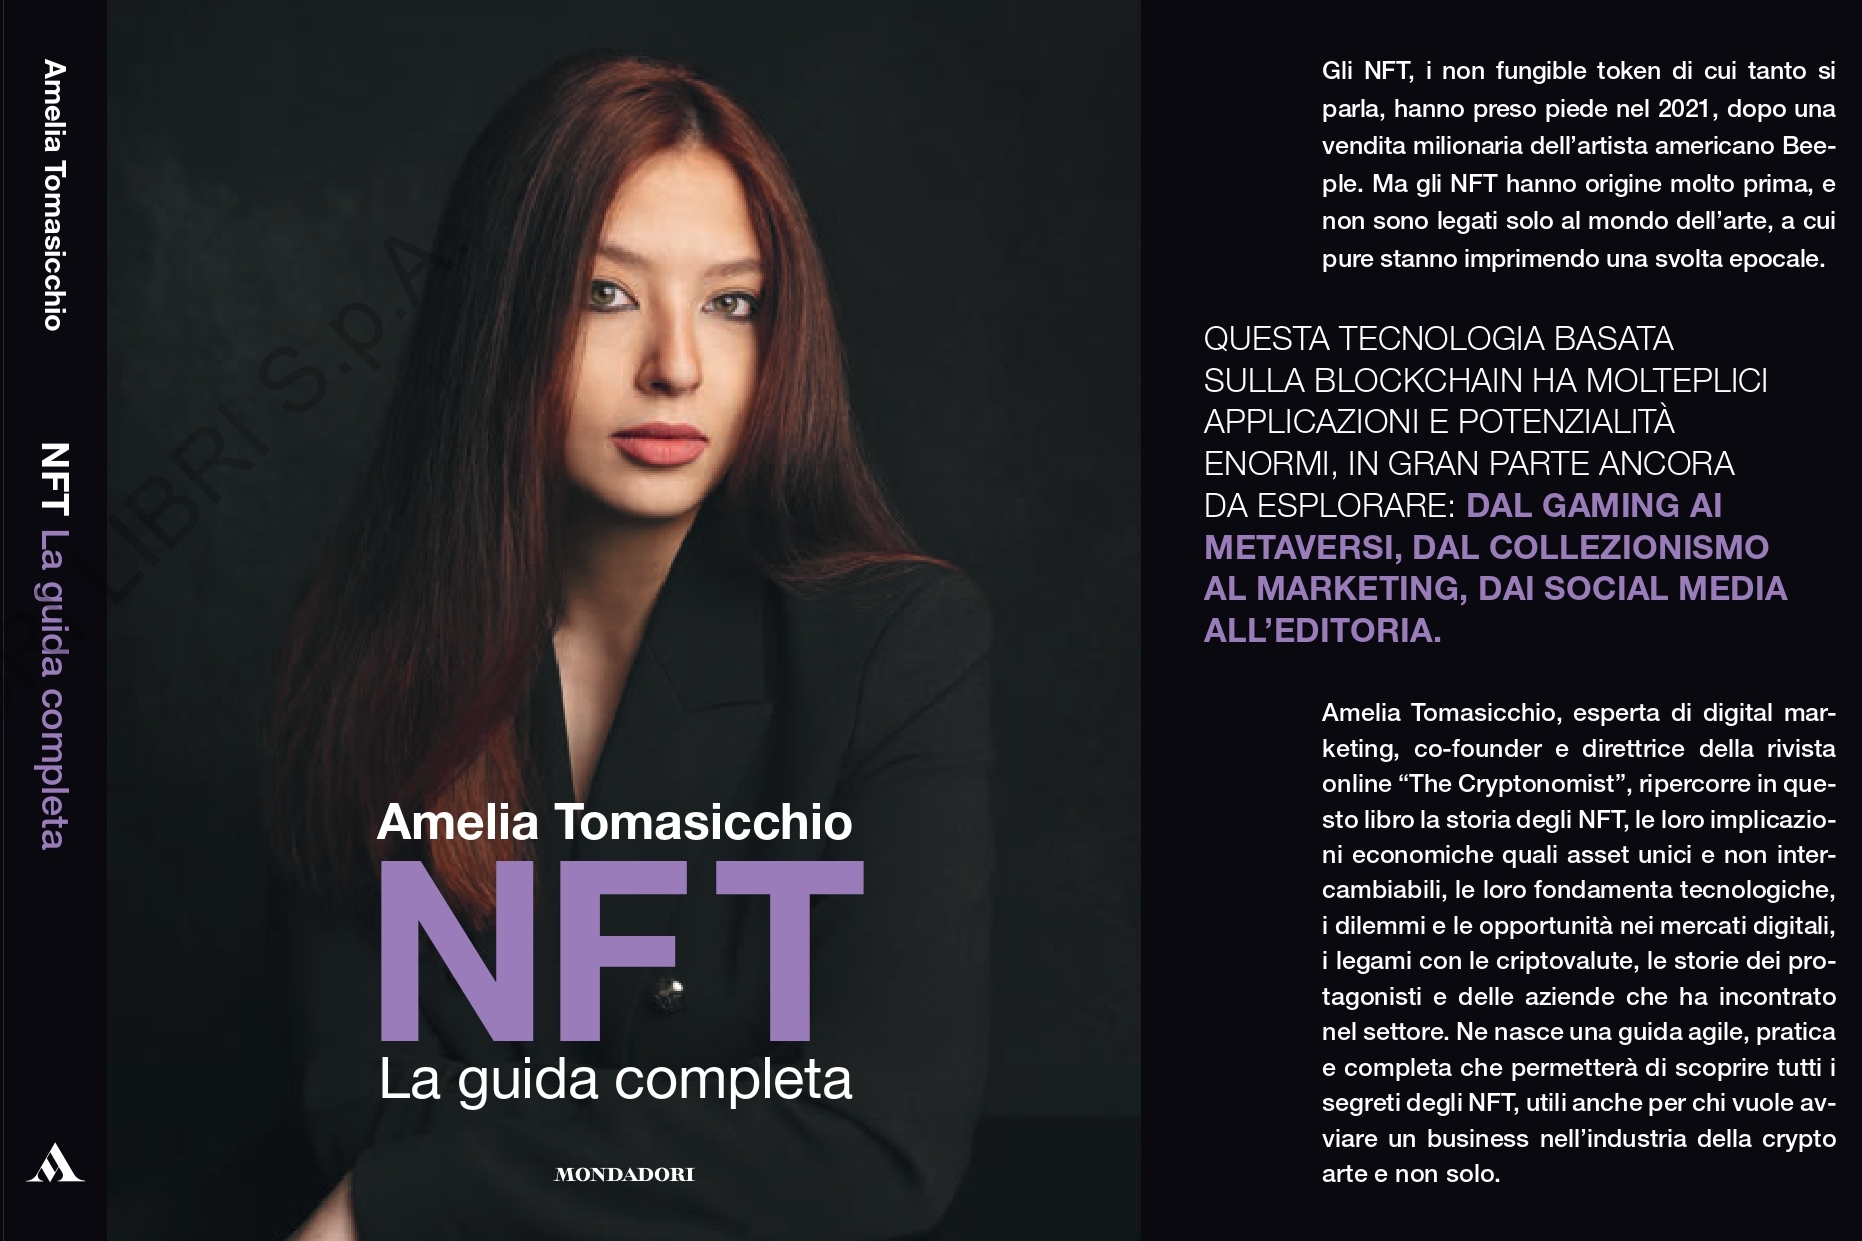 Il libro “NFT: la guida completa” di Amelia Tomasicchio per Mondadori